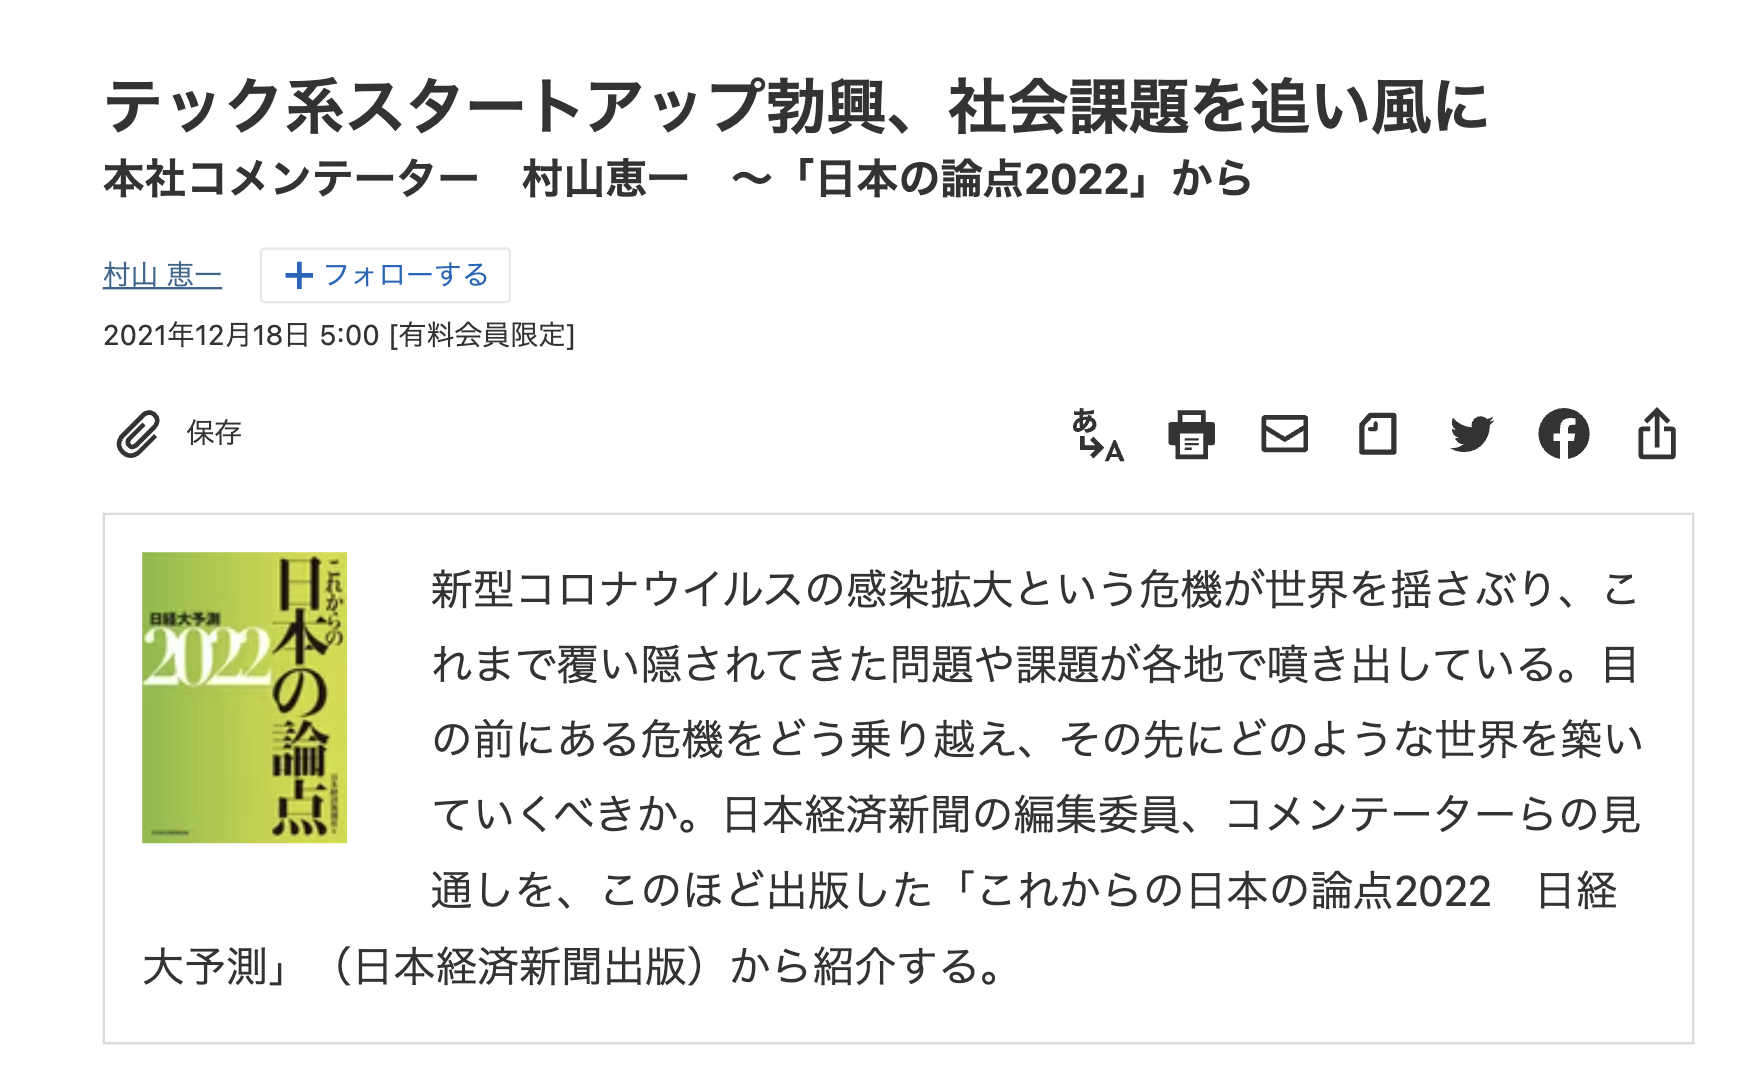 2021/12/18 日本経済新聞:日本の論点2022のイメージ